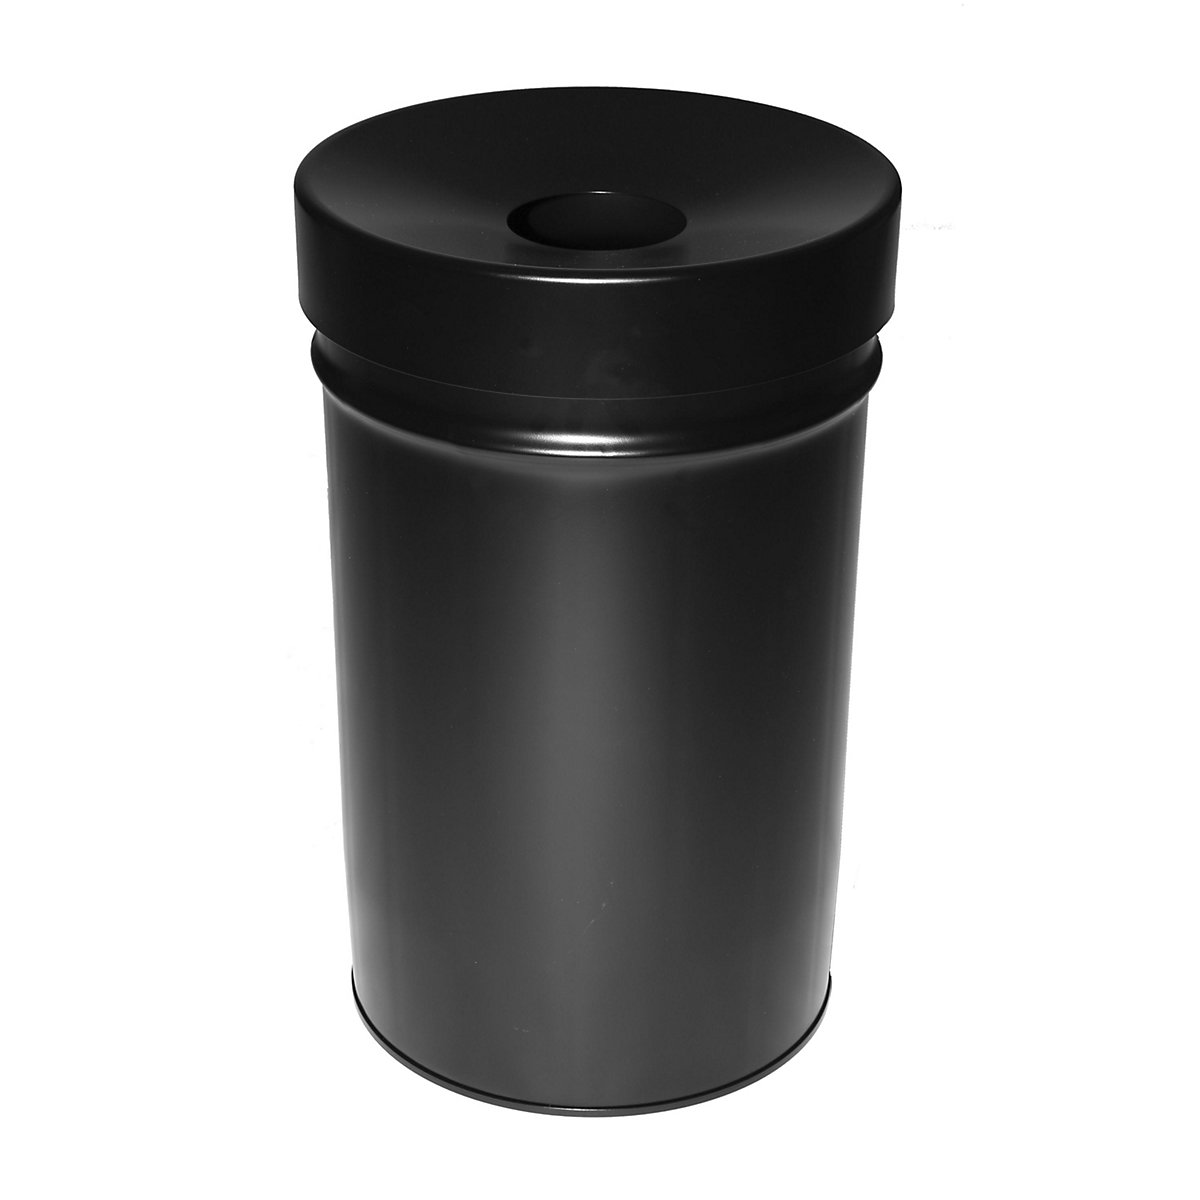 Abfallbehälter, selbstlöschend, Volumen 60 l, HxØ 630 x 392 mm, schwarz